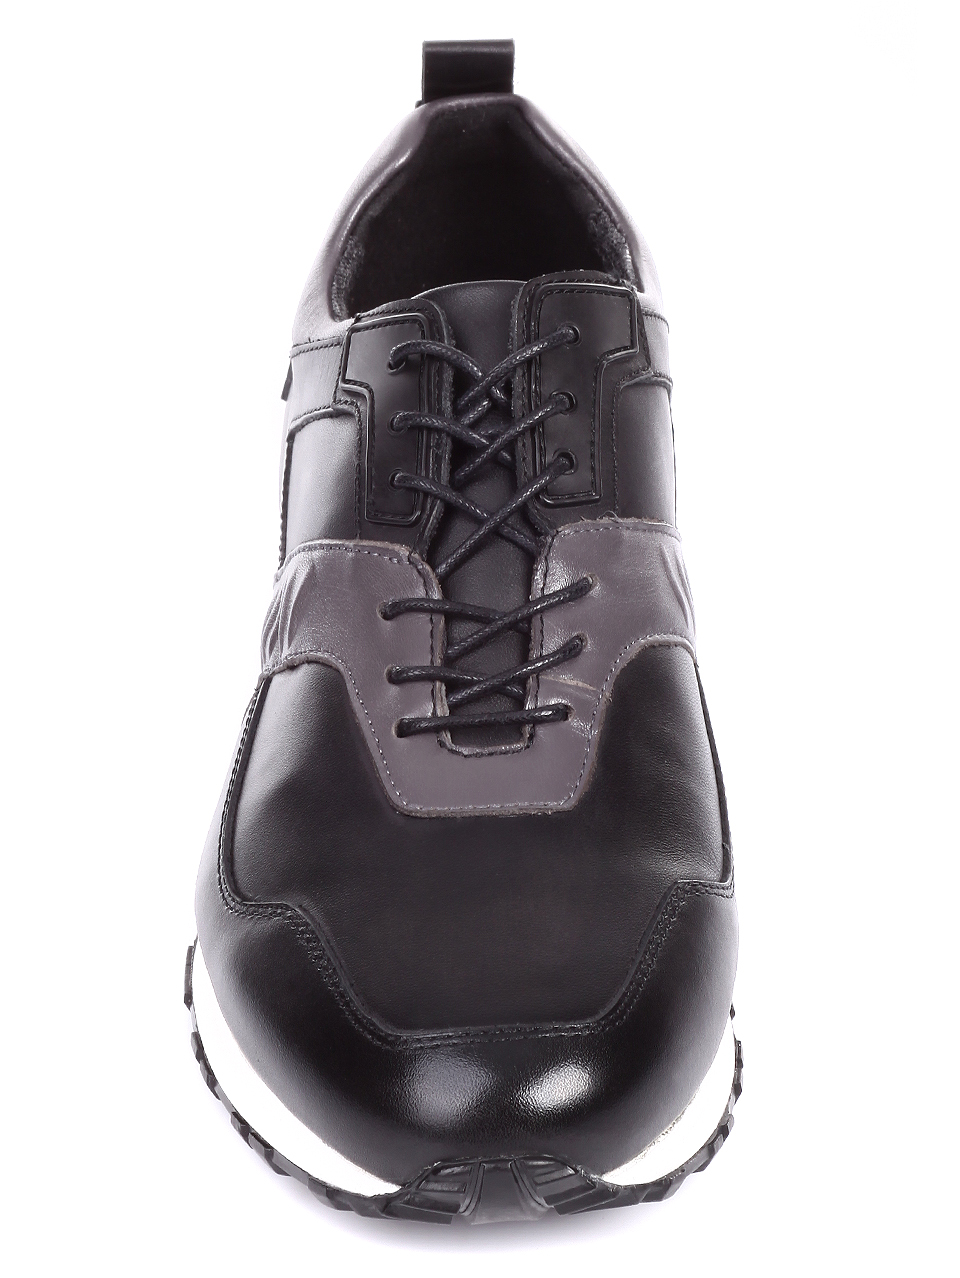 Ежедневни мъжки обувки от естествена кожа 7AB-19743 black/grey